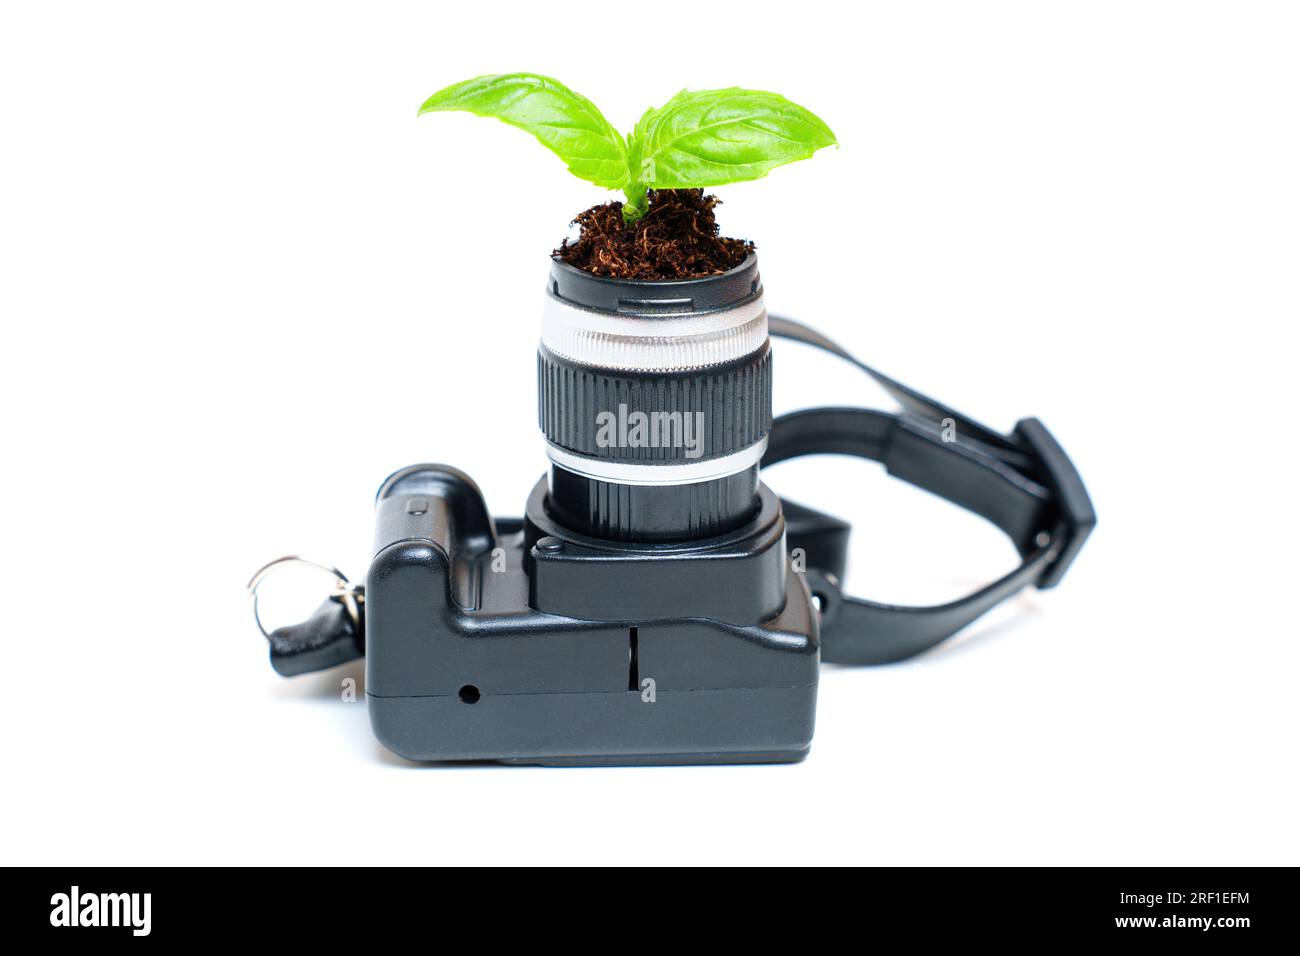 La giovane pianta emerge con grazia dall'obiettivo di una fotocamera in miniatura, simboleggiando il concetto di sviluppo del talento e di esplorazione creativa. Foto Stock